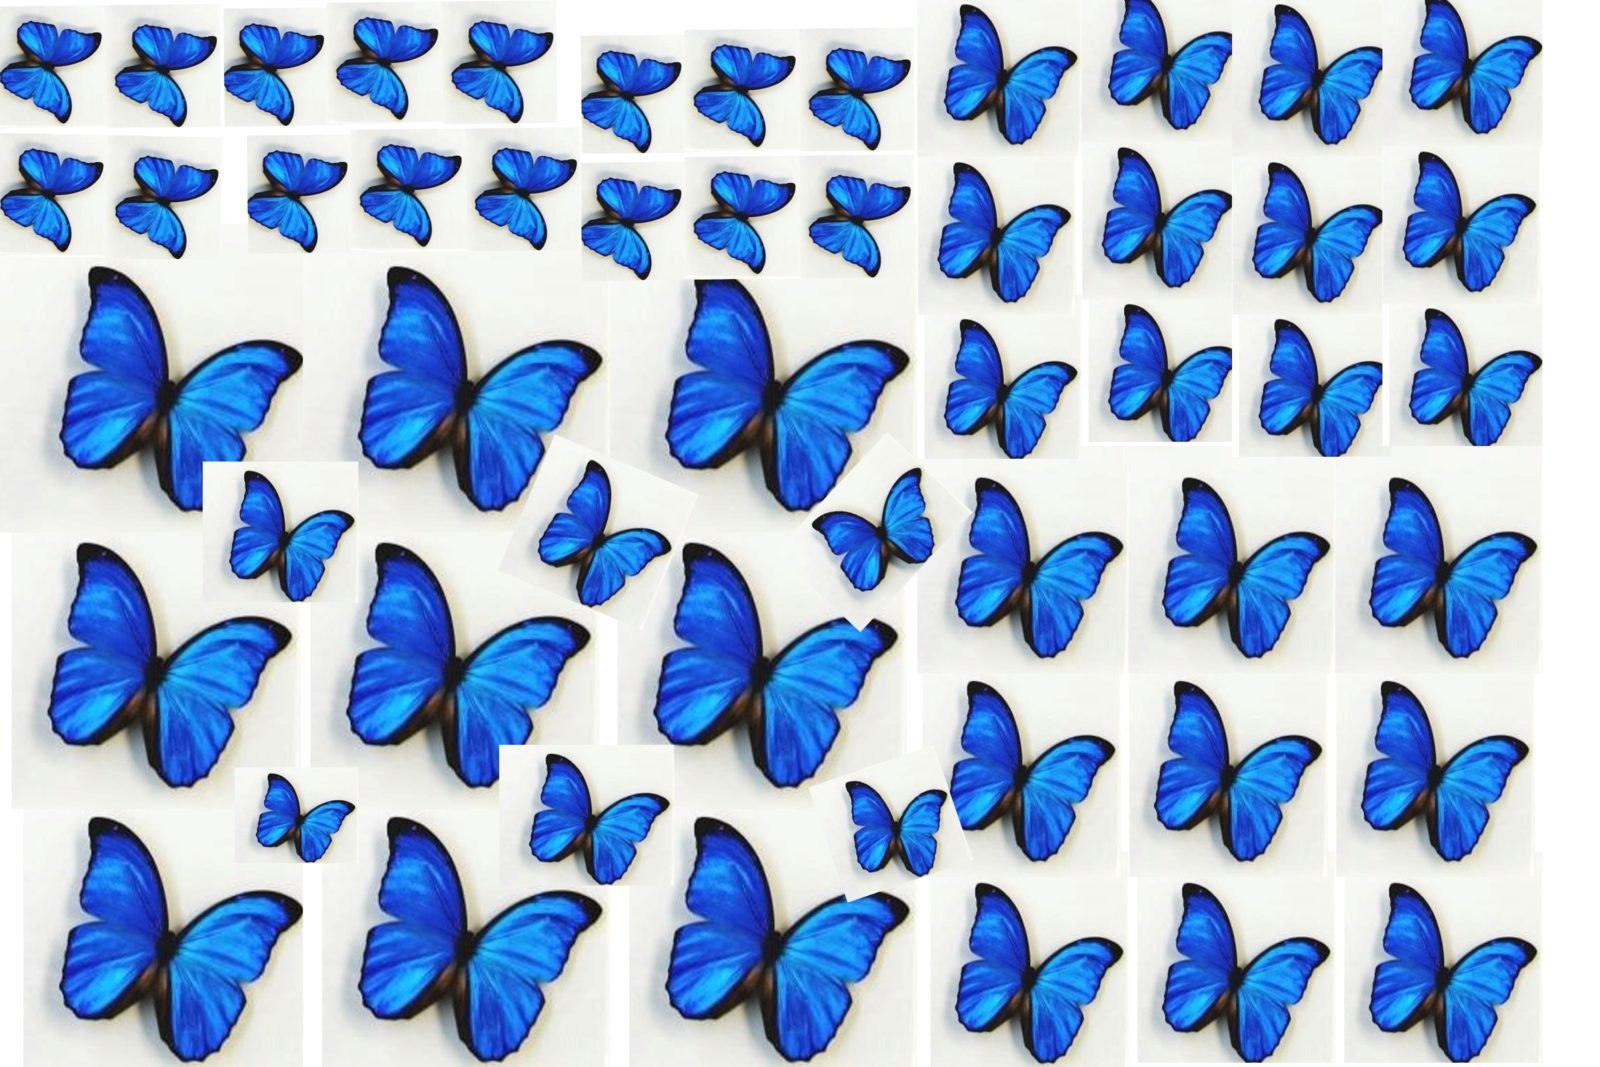 Разных размеров. Бабочки. Бабочки разных цветов. Бабочки разных размеров. Цветные бабочки для печати.